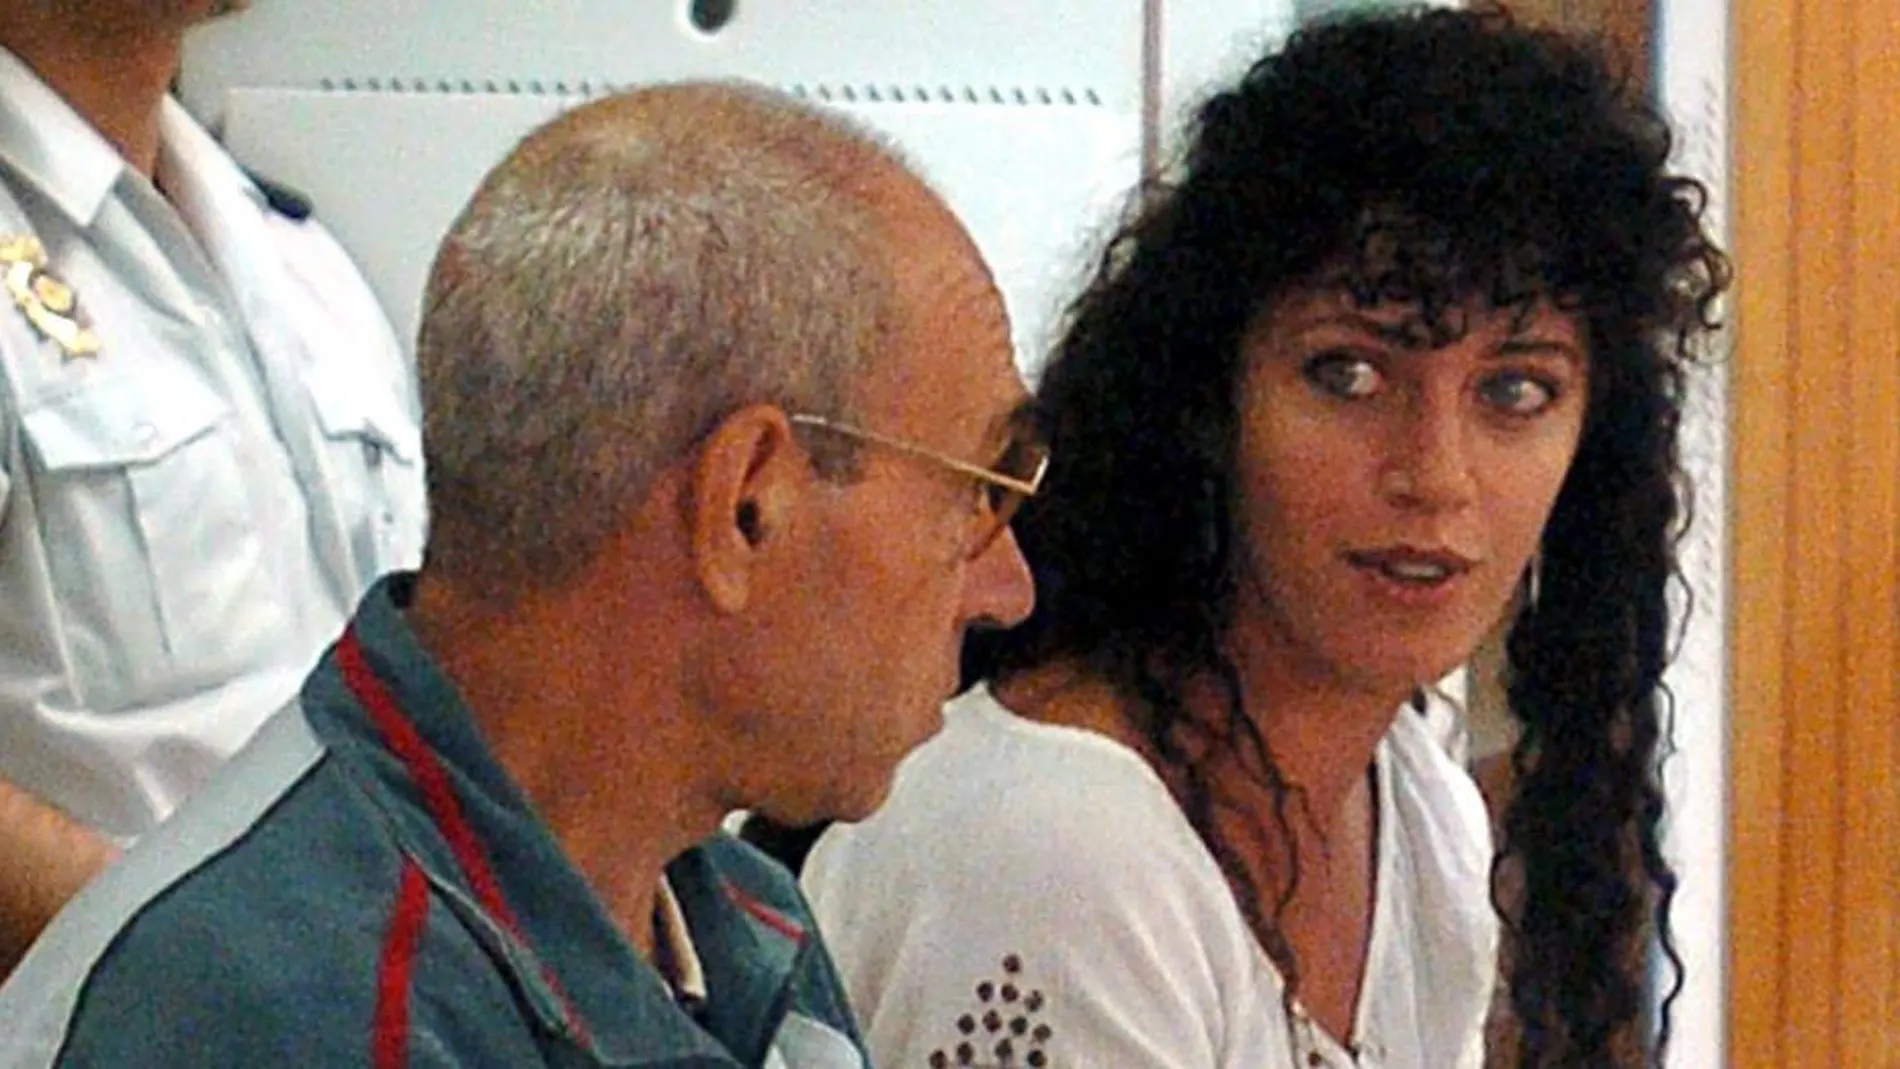 Imagen de archivo, tomada en Madrid el 19 de julio de 2004, de los etarras Idoia López Riaño, alias "Tigresa", y Santiago Arrospide Sarasola, "Santi Potros"